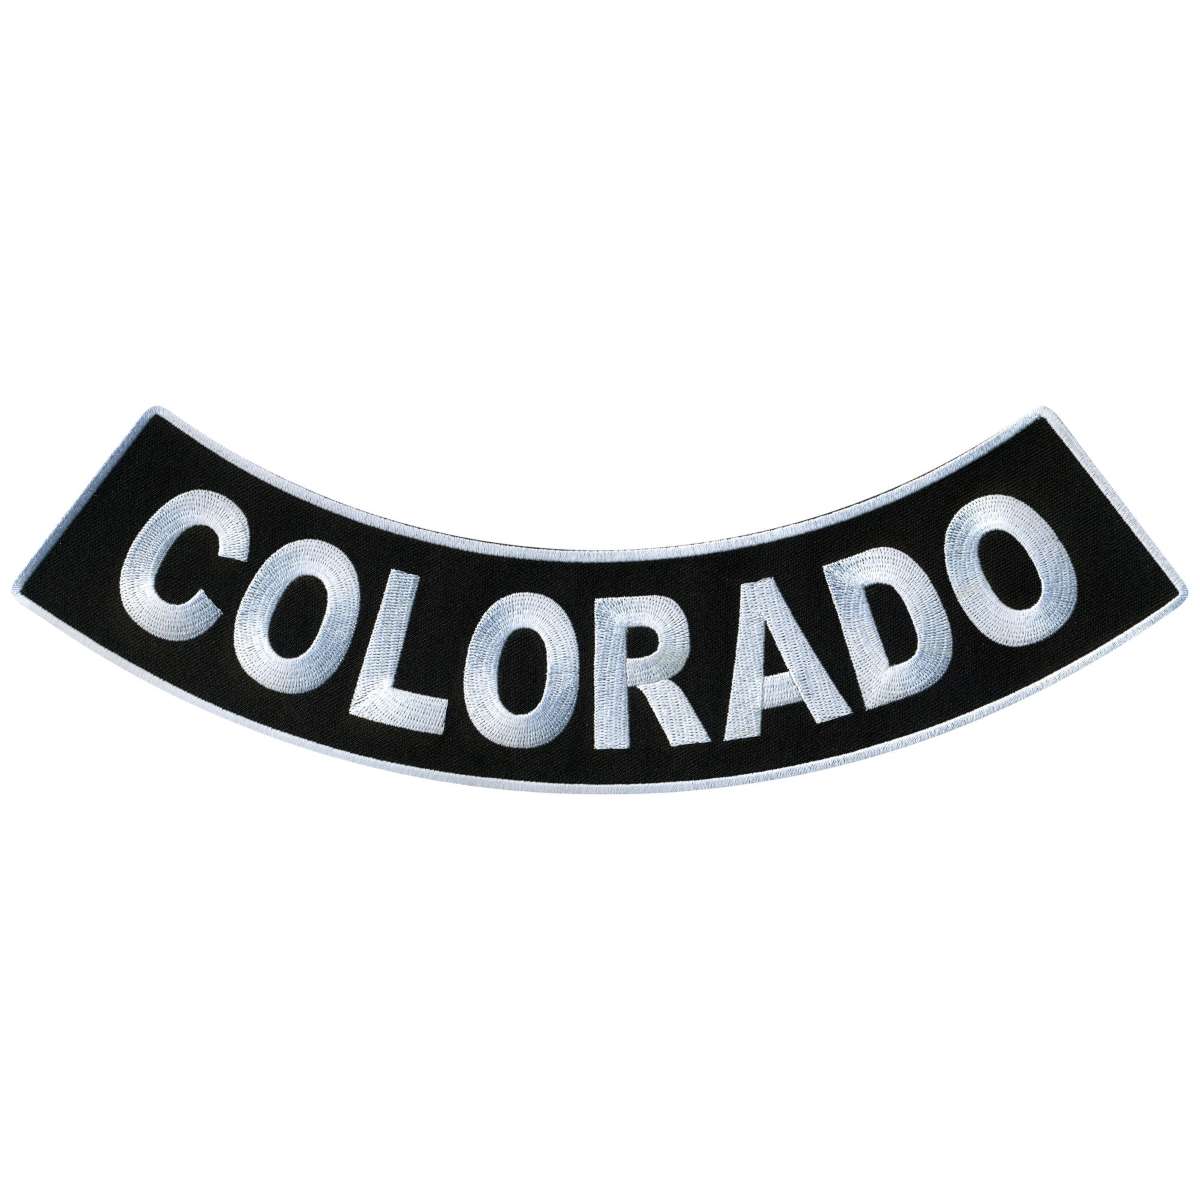 Hot Leathers Colorado 12” X 3” Bottom Rocker Patch PPM5011